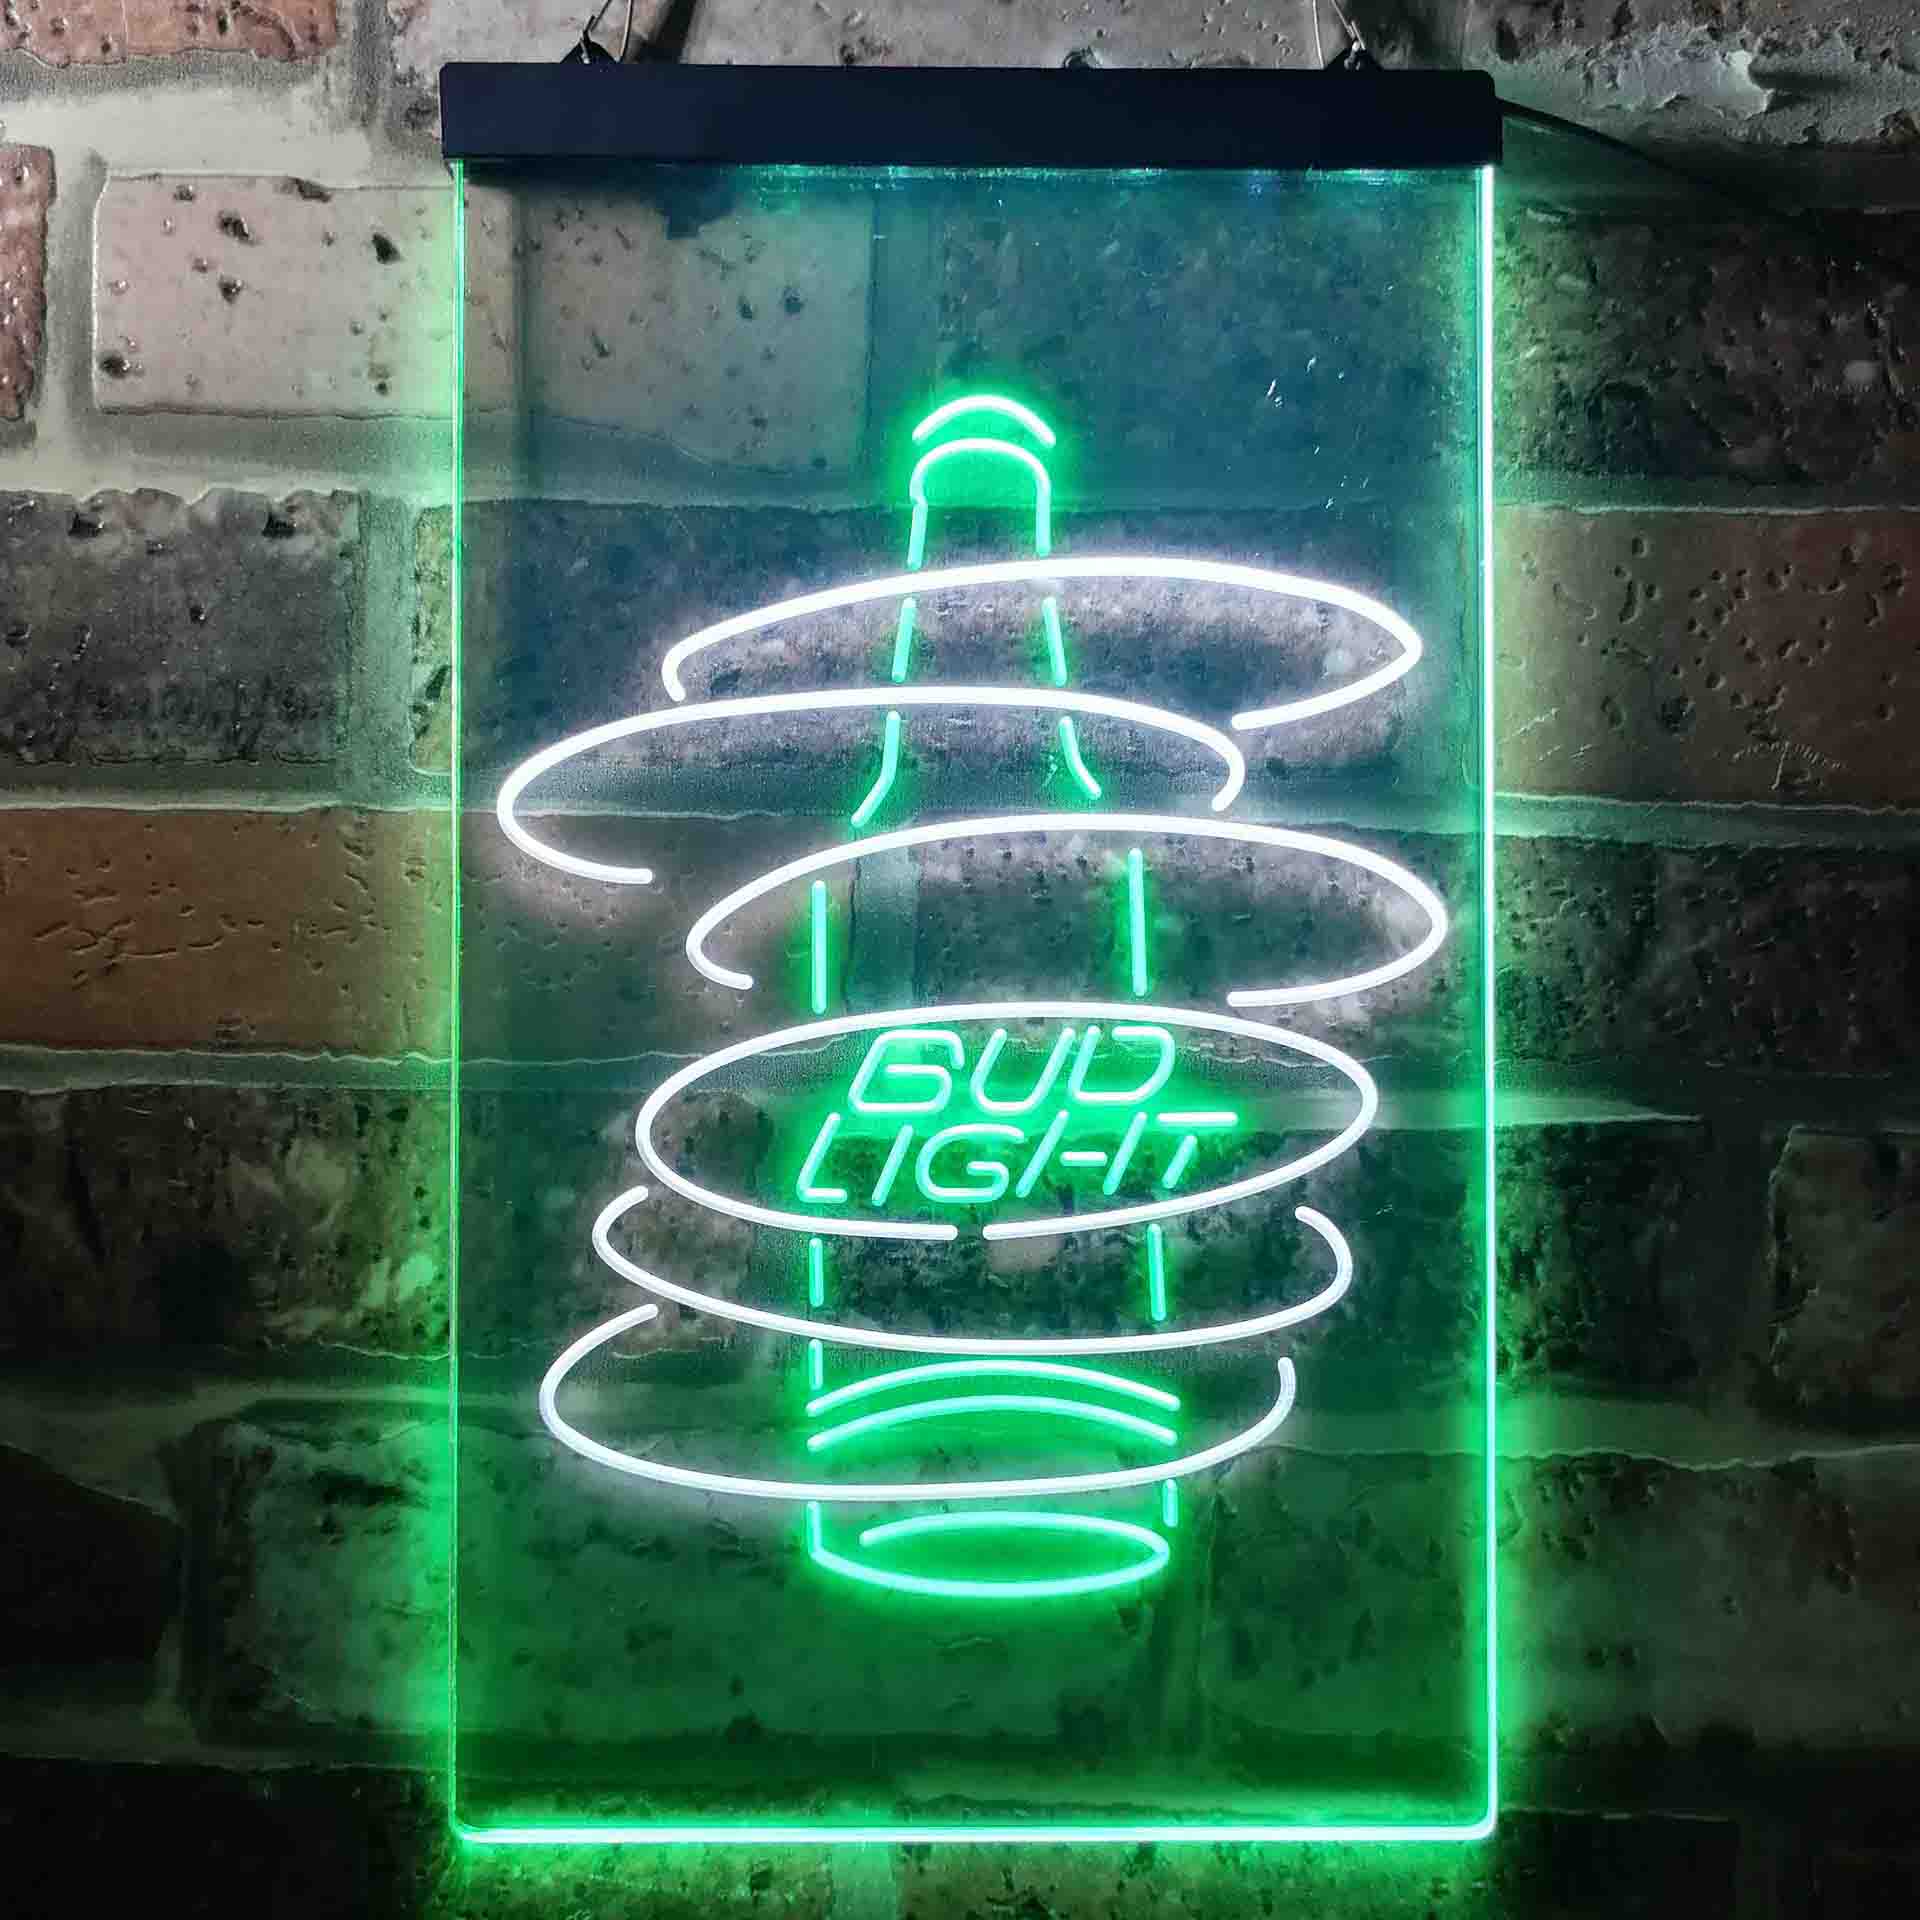 Bud Light Bottle Neon LED Sign